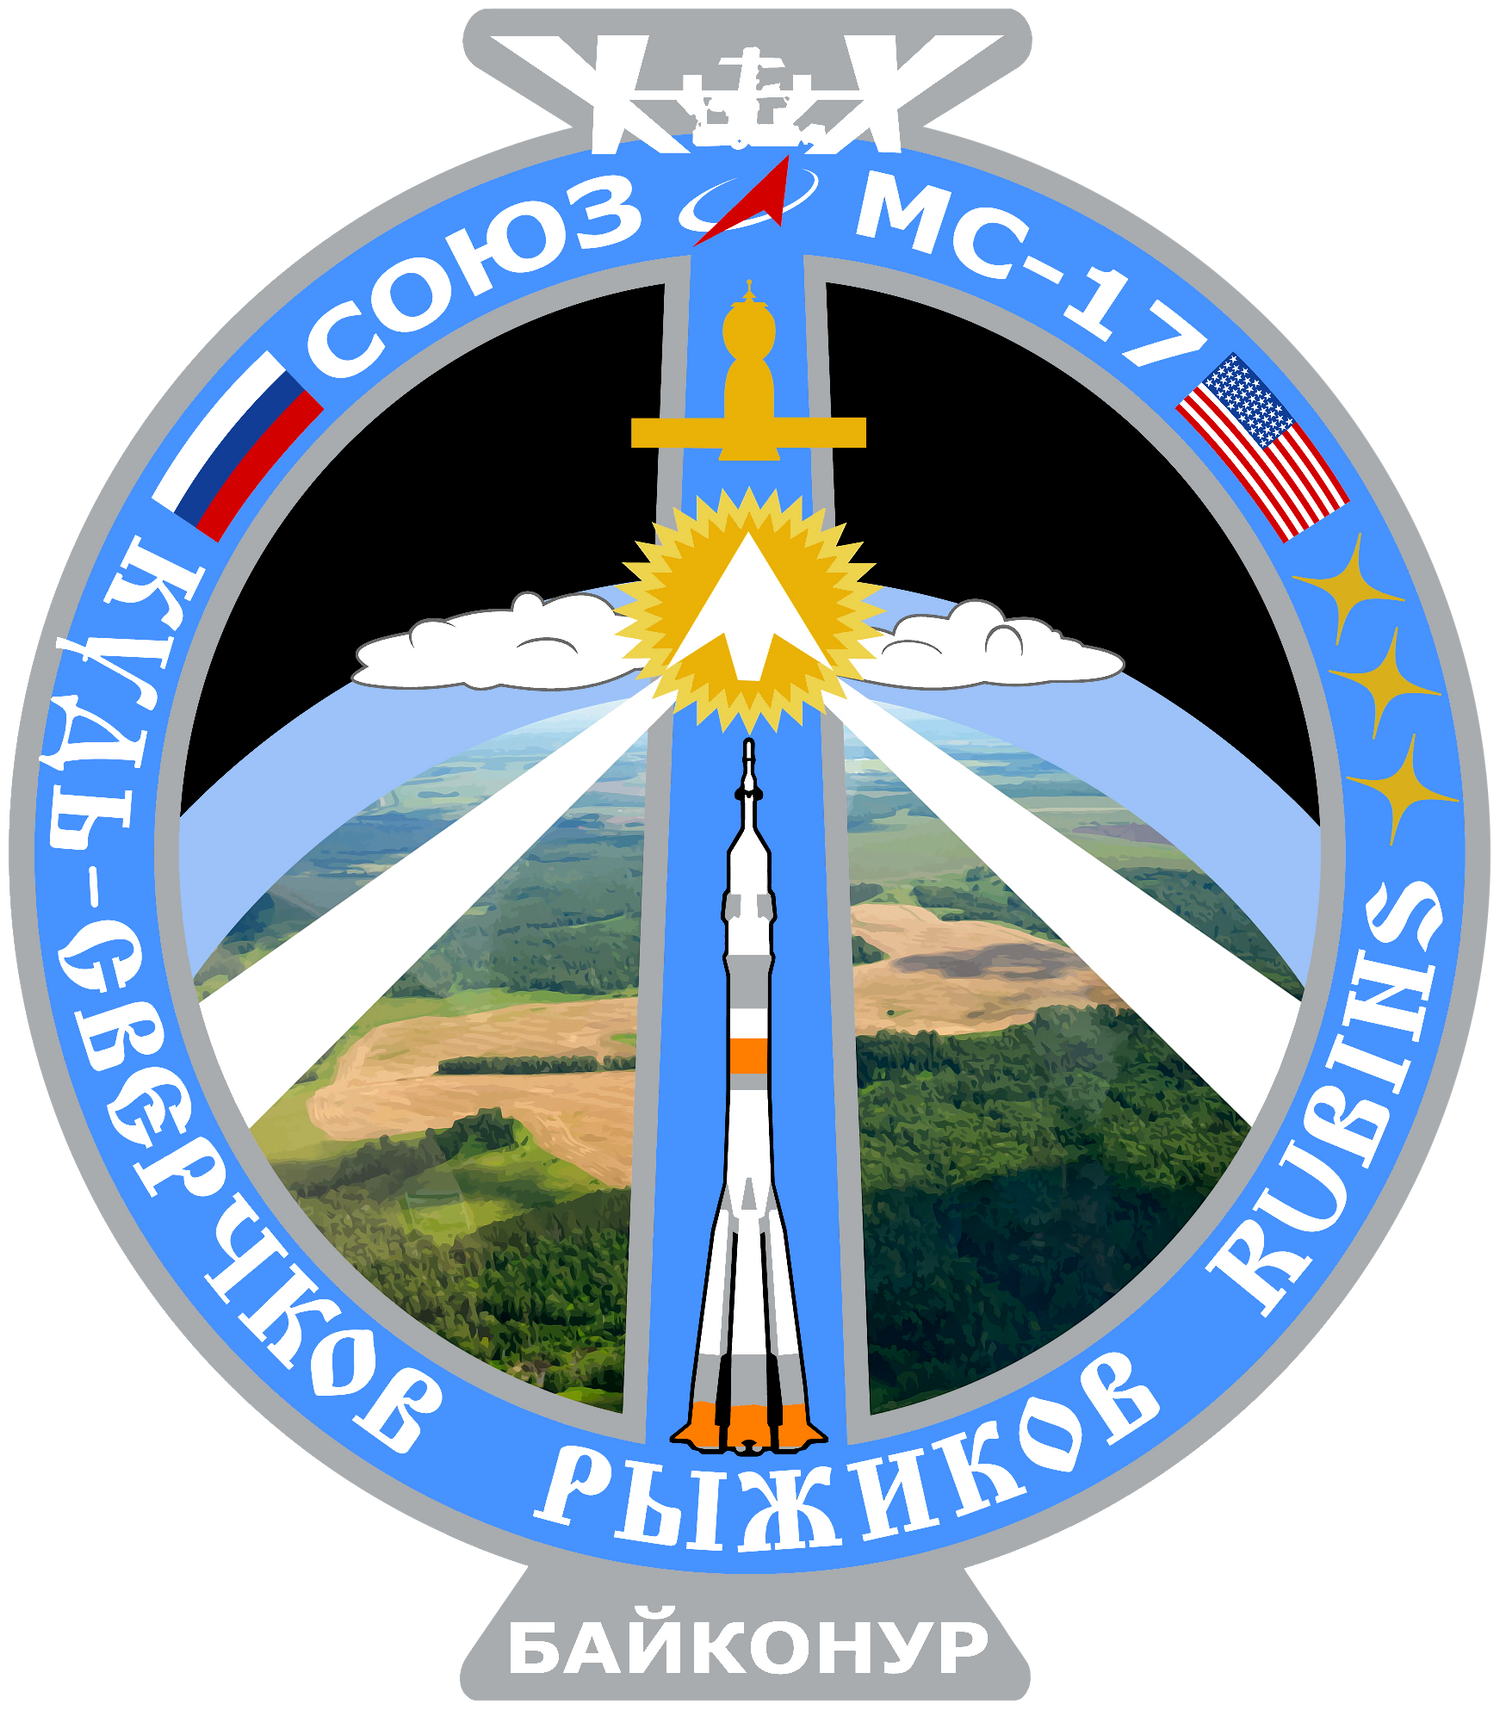 Soyuz MS-17